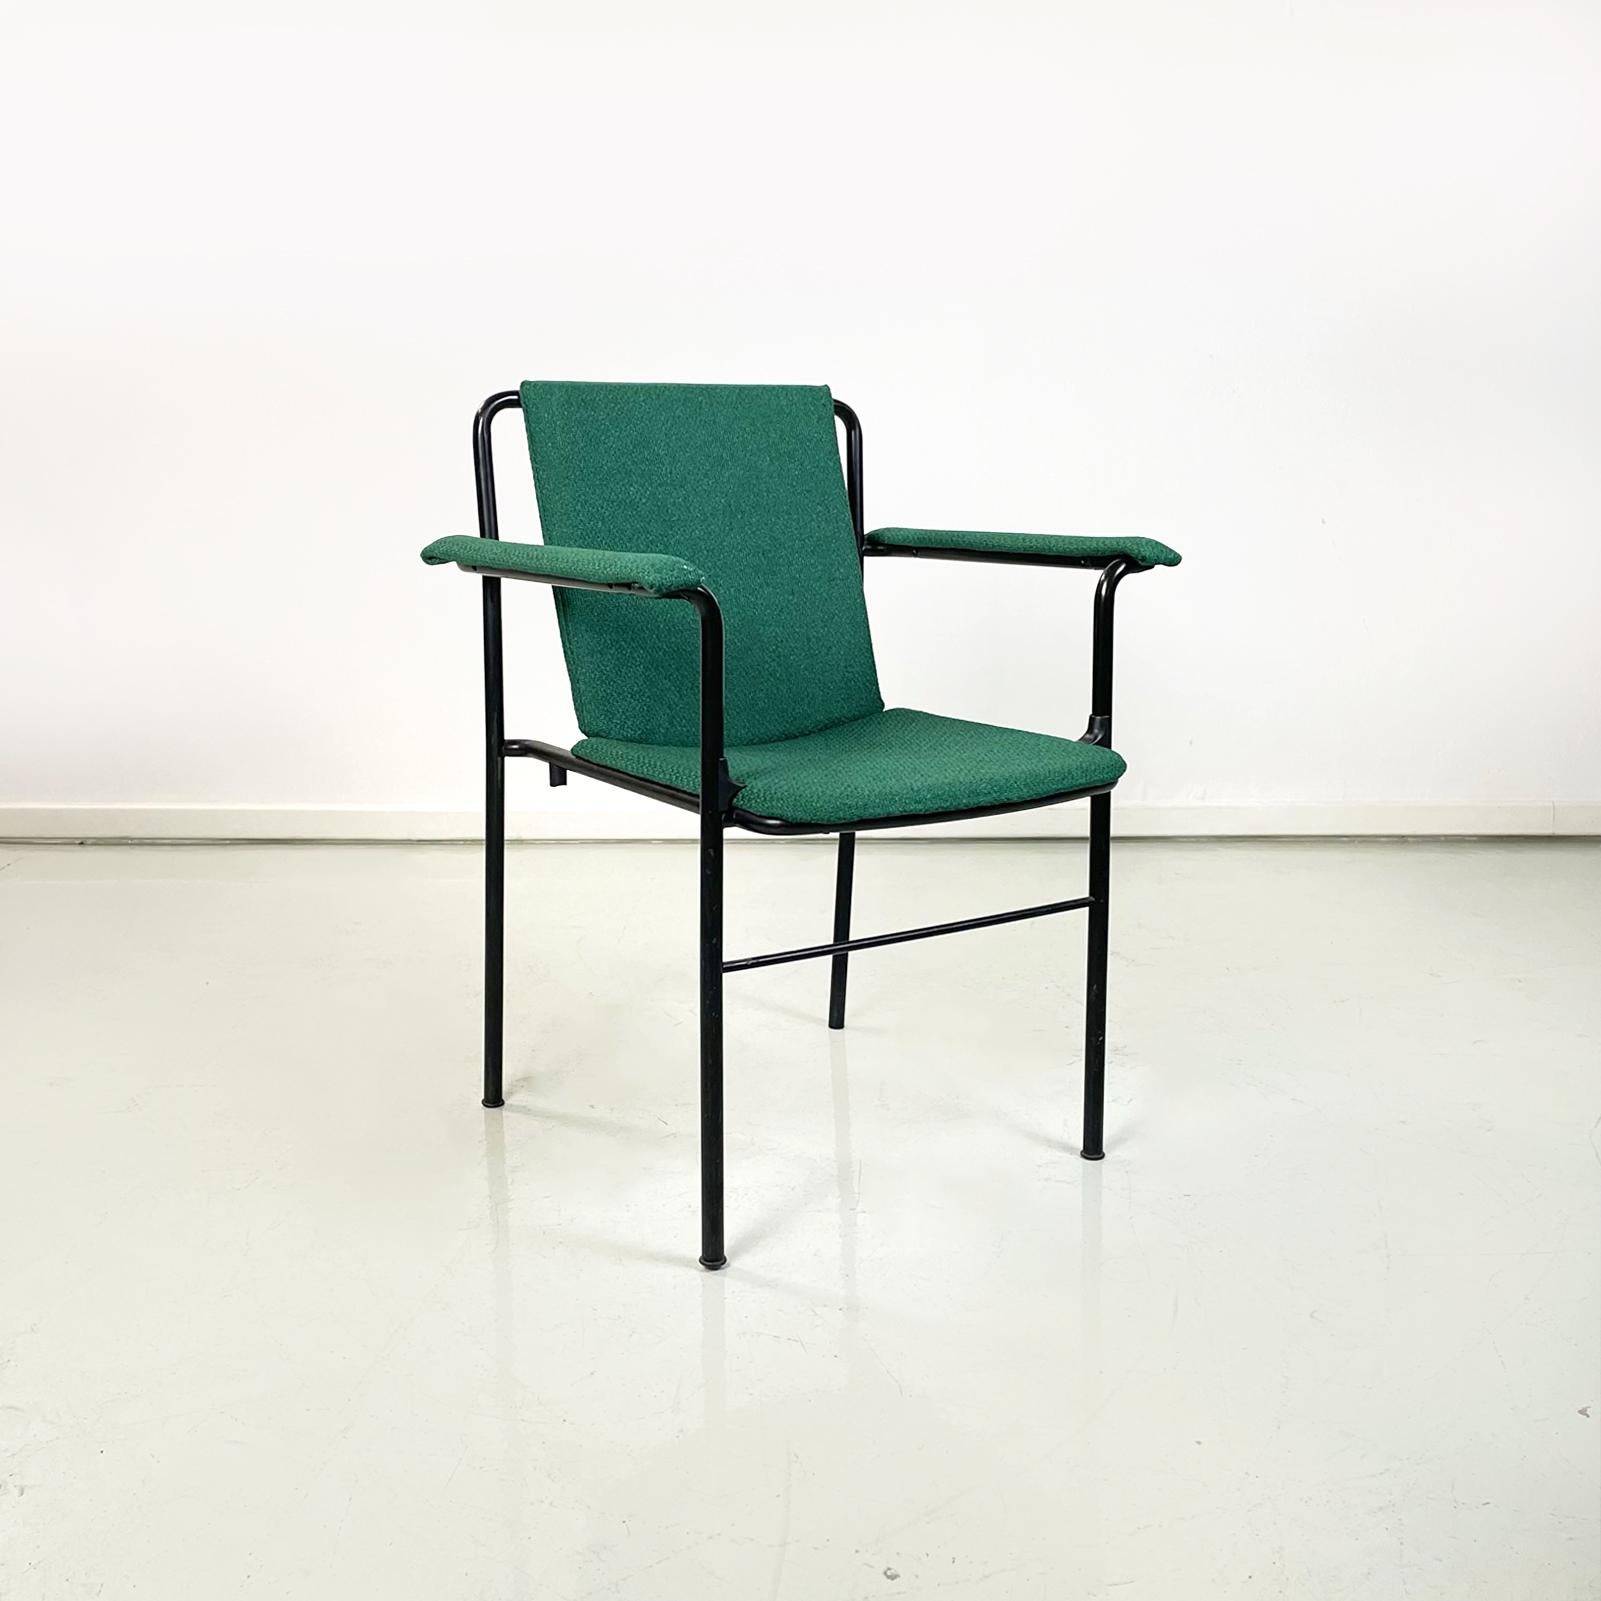 Moderne italienische Sessel Kinosessel von Mario Marenco für Poltrona Frau, 1980er Jahre
Satz von 6 Sesseln mod. Movie Chair mit rechteckigem Sitz, Armlehnen und Rückenlehne, gepolstert in waldgrünem Stoff. Die Rückenlehne ist leicht geneigt, um dem